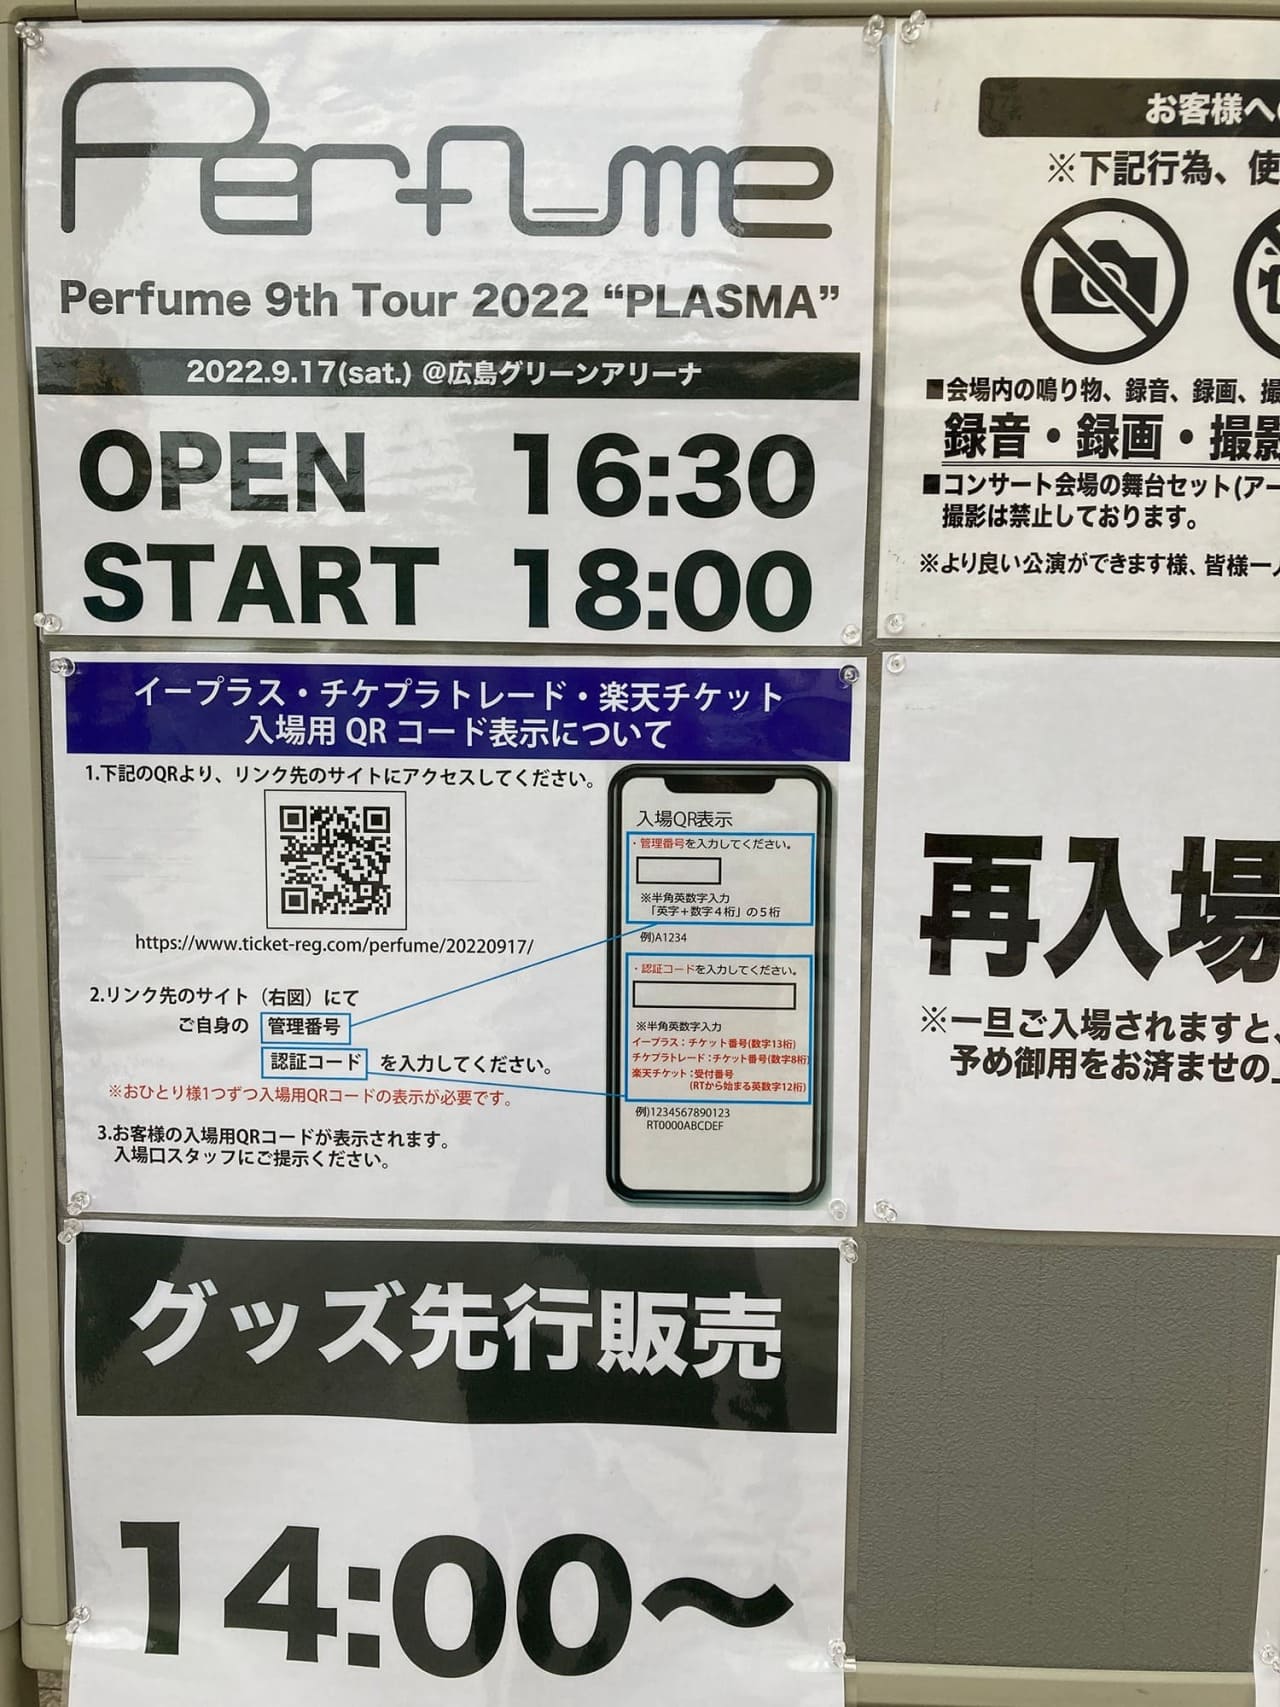 Perfume 9th Tour 2022 “PLASMA”